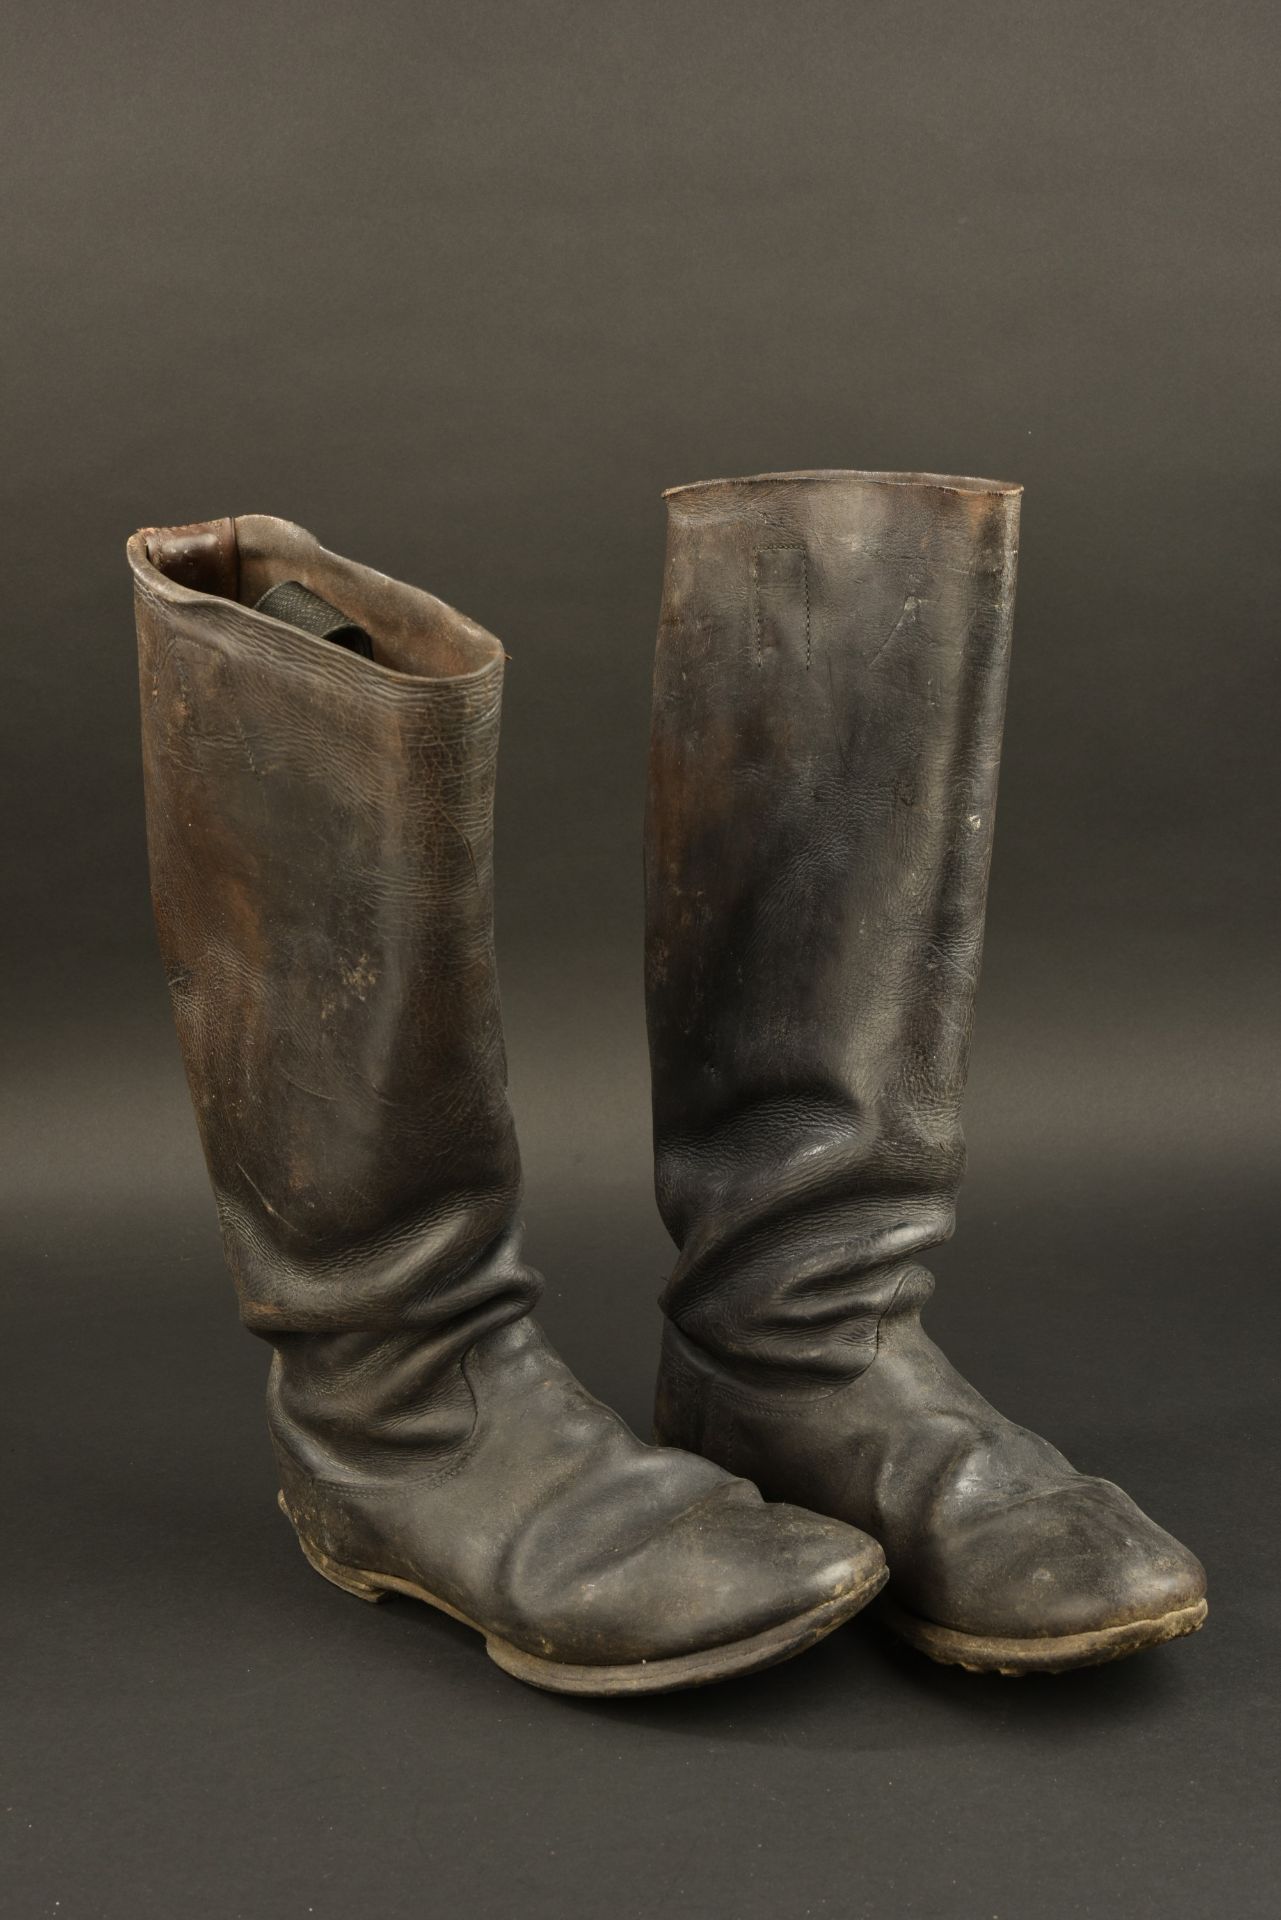 Bottes d officier allemand. German officer boots.